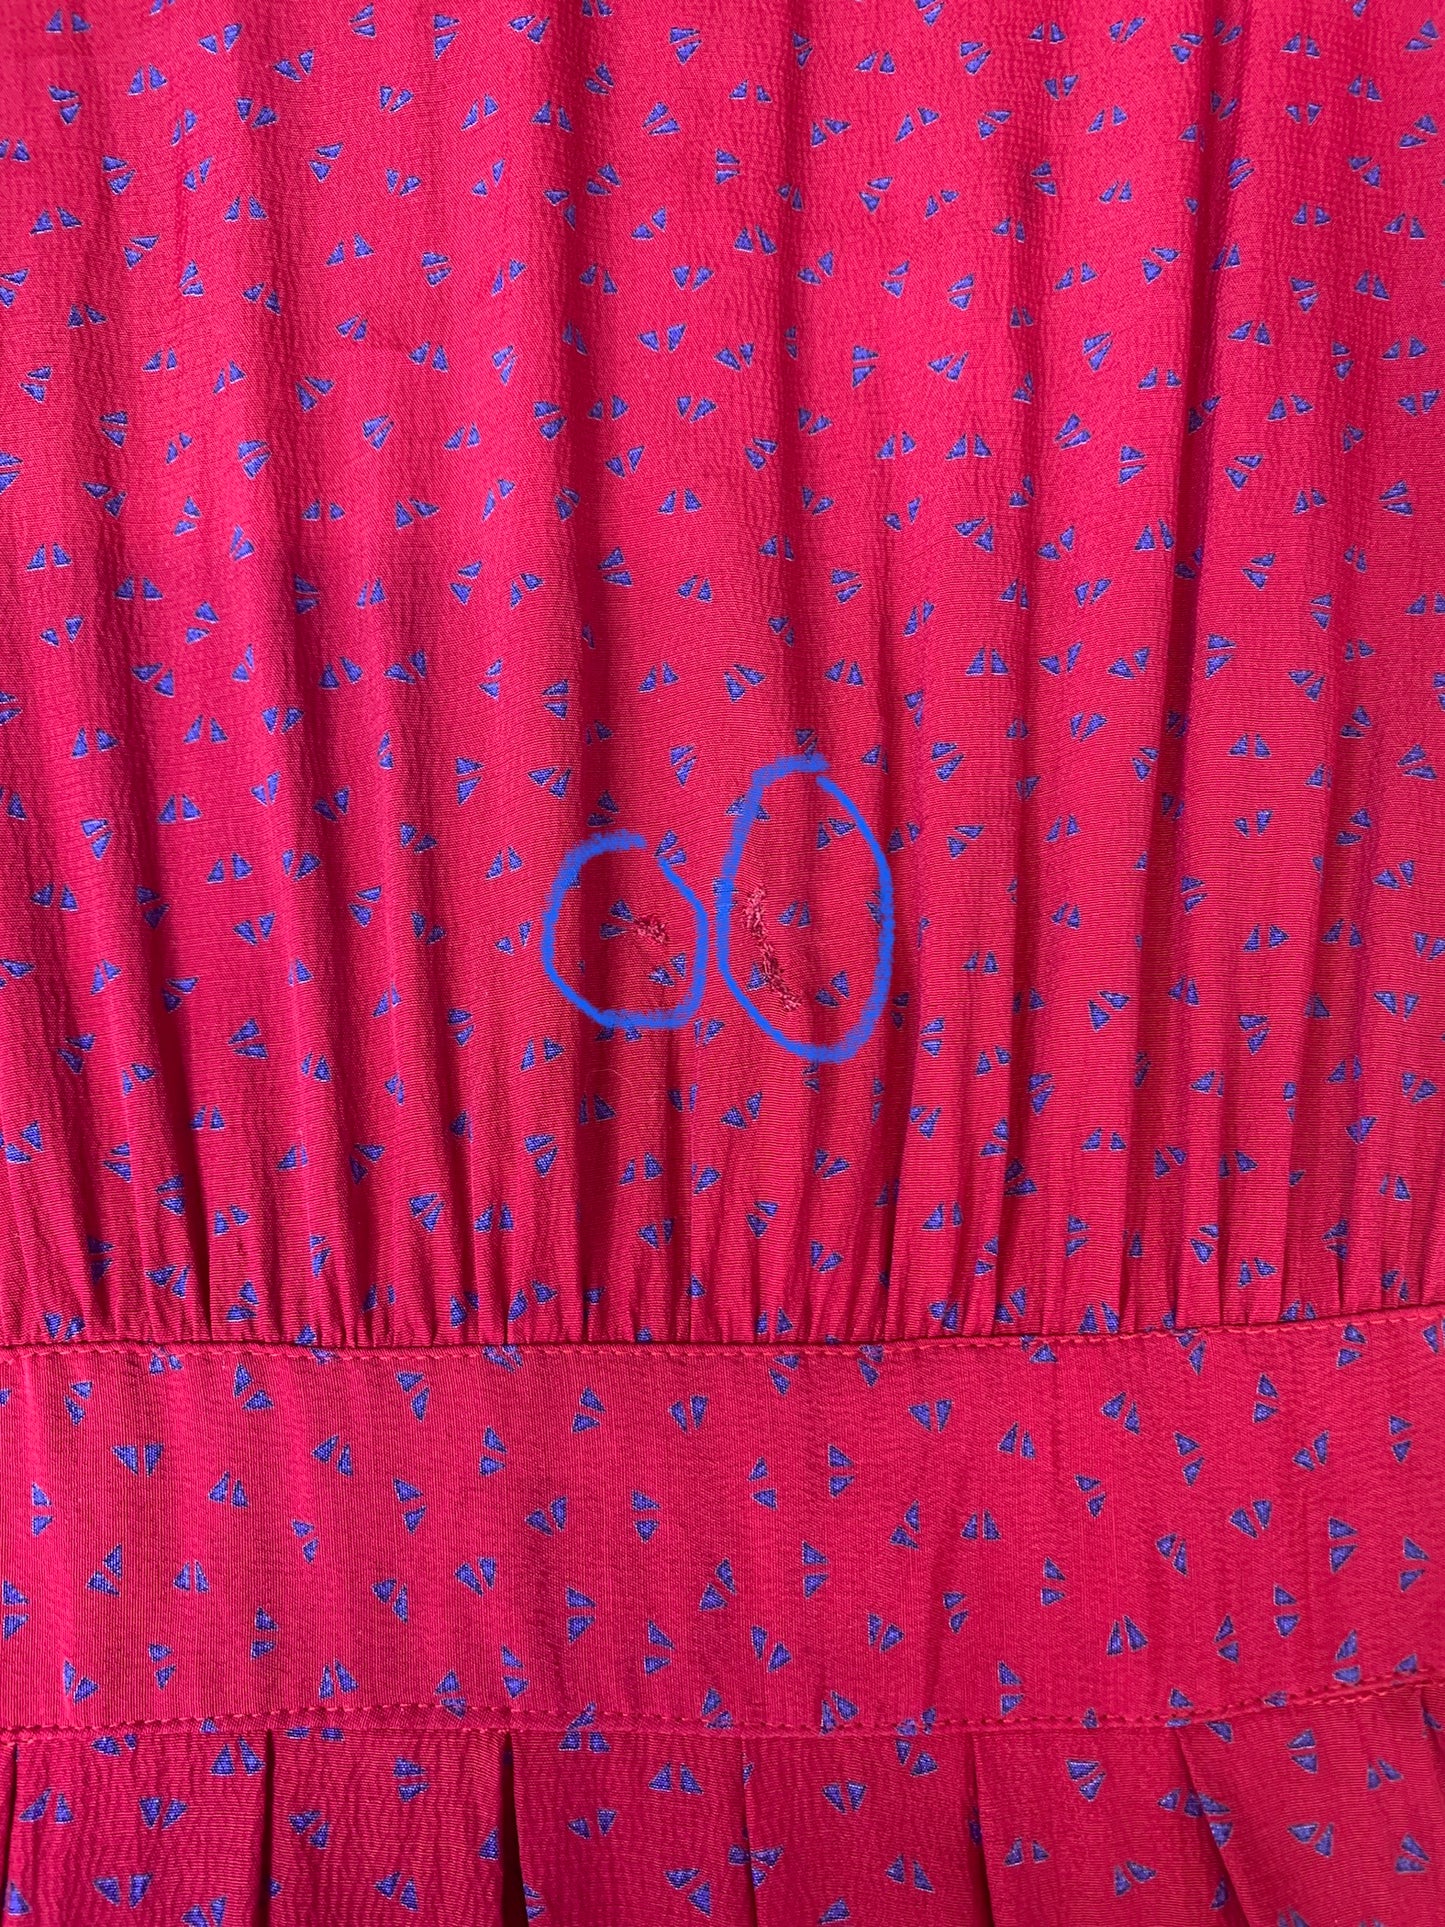 Robe vintage fluide rouge à confettis bleus IMP* (S)